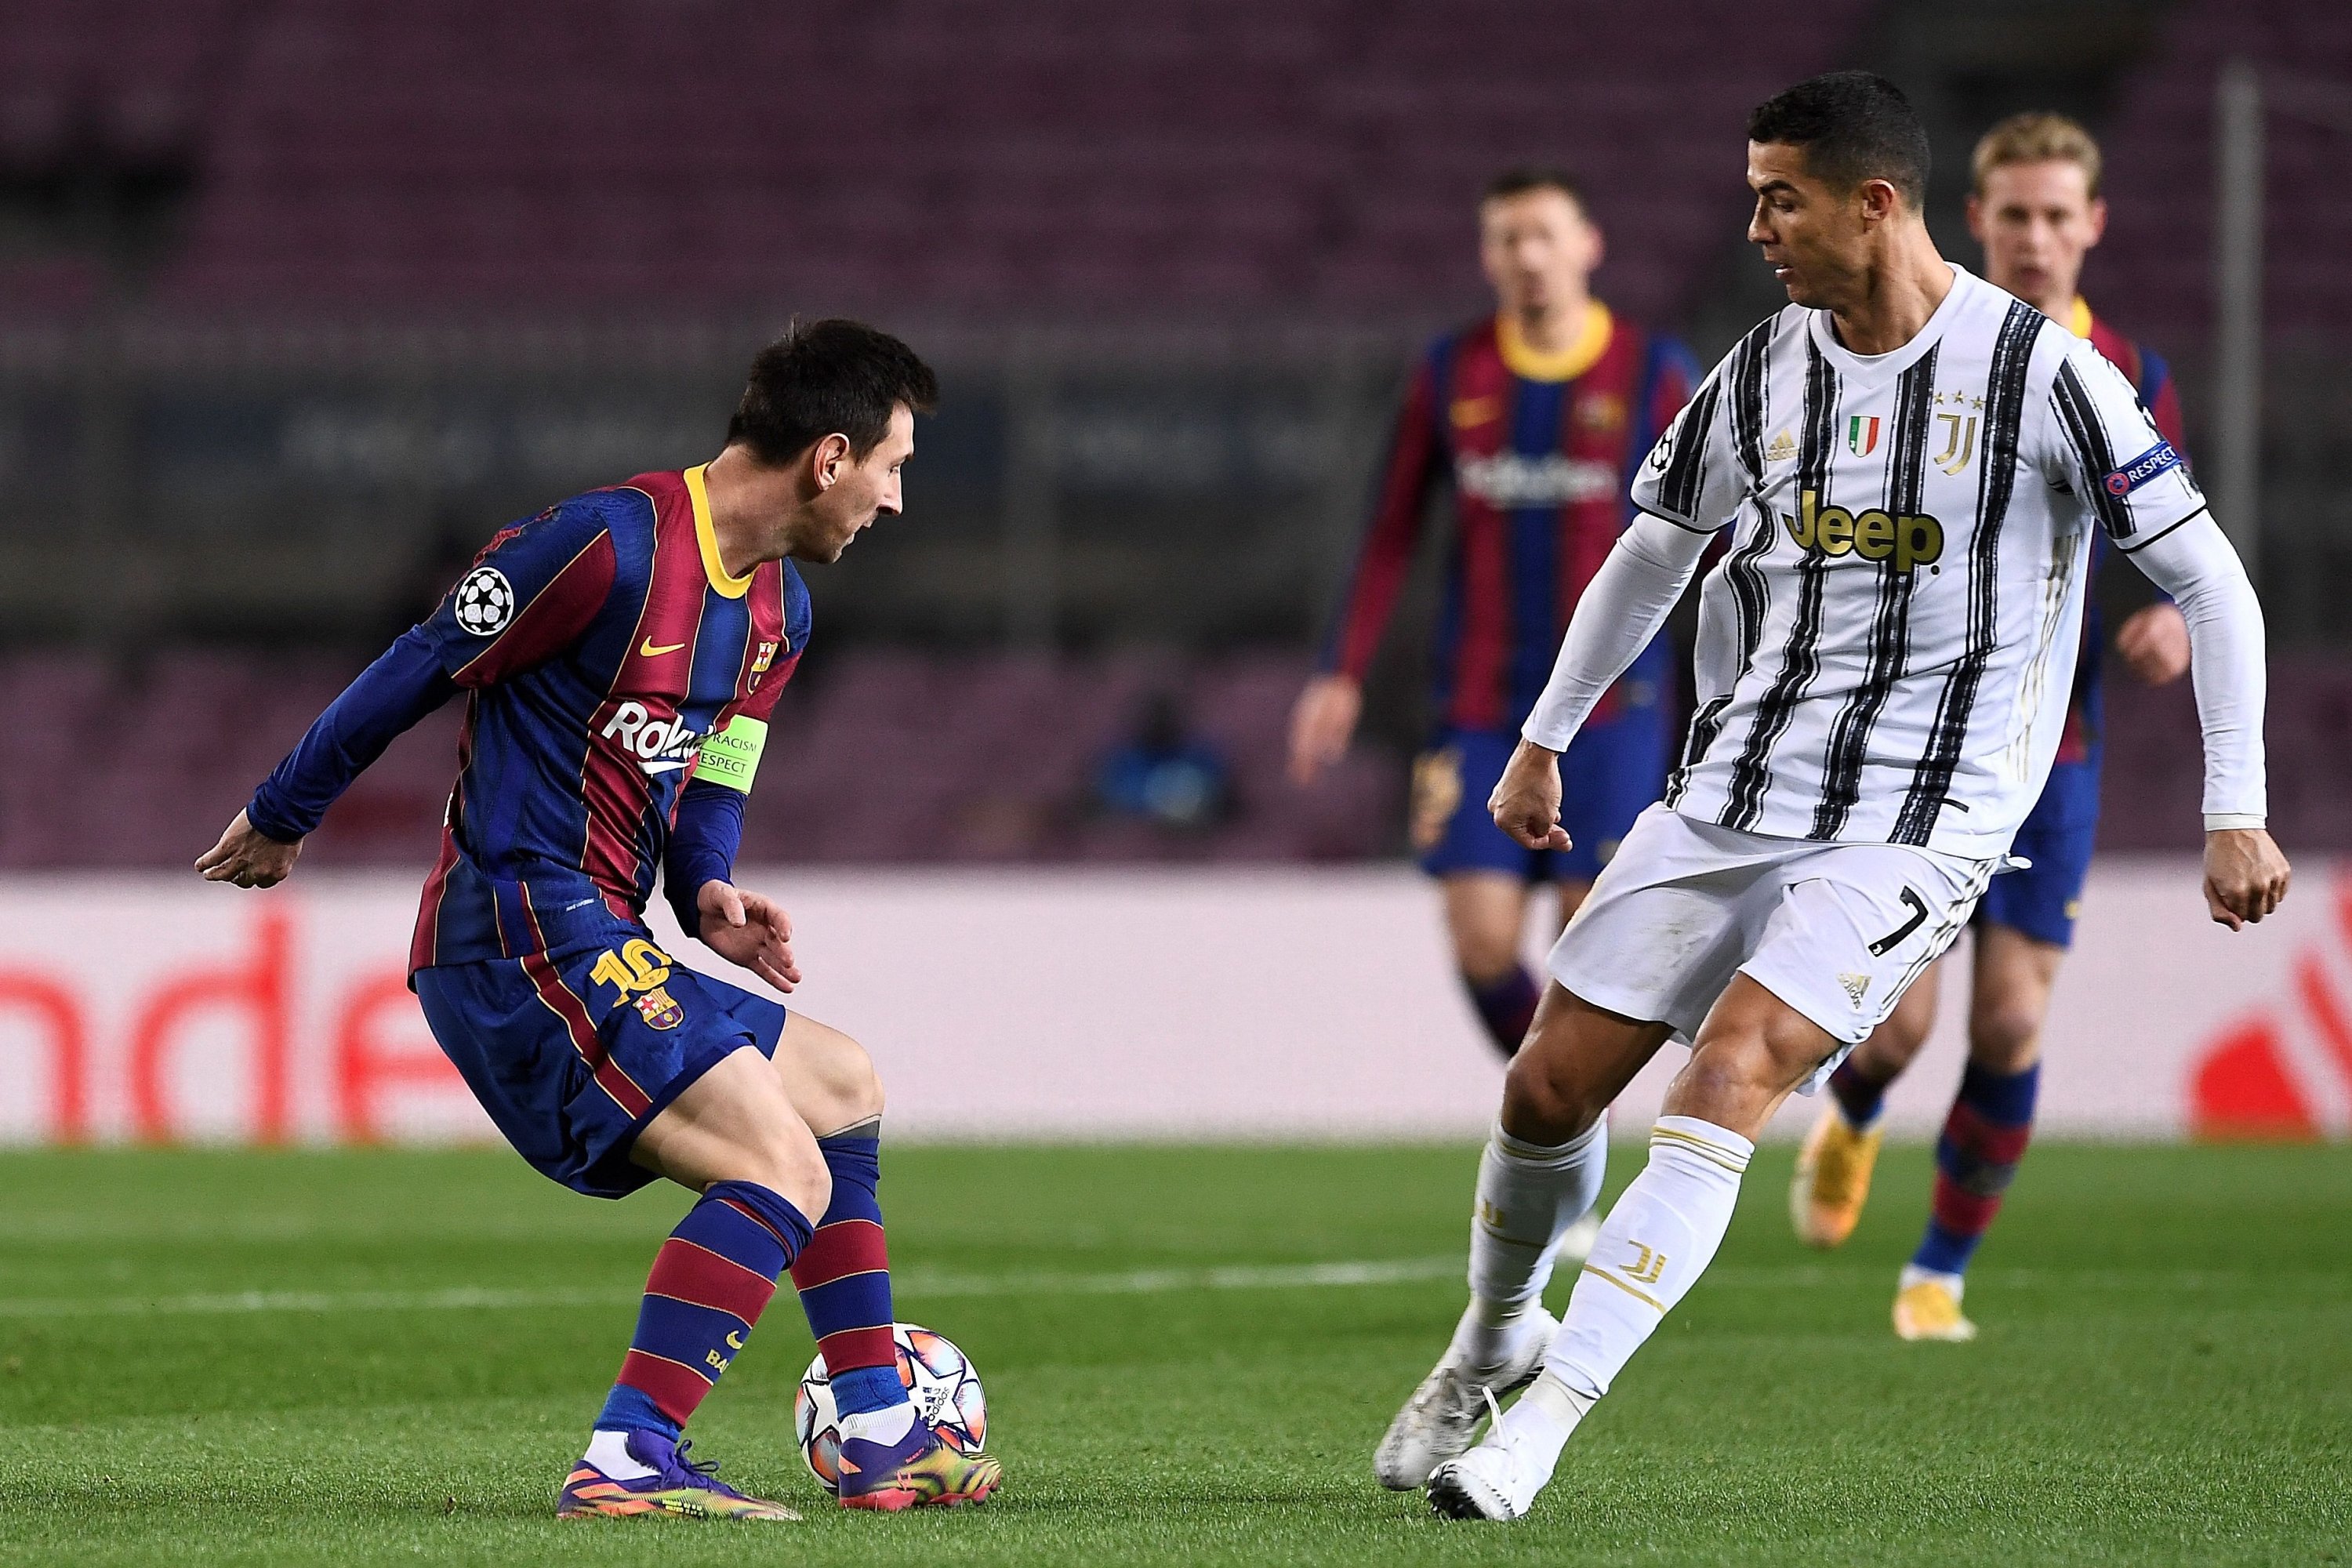 Saudi business mogul bids $2.6M for Ronaldo-Messi ticket | Daily Sabah